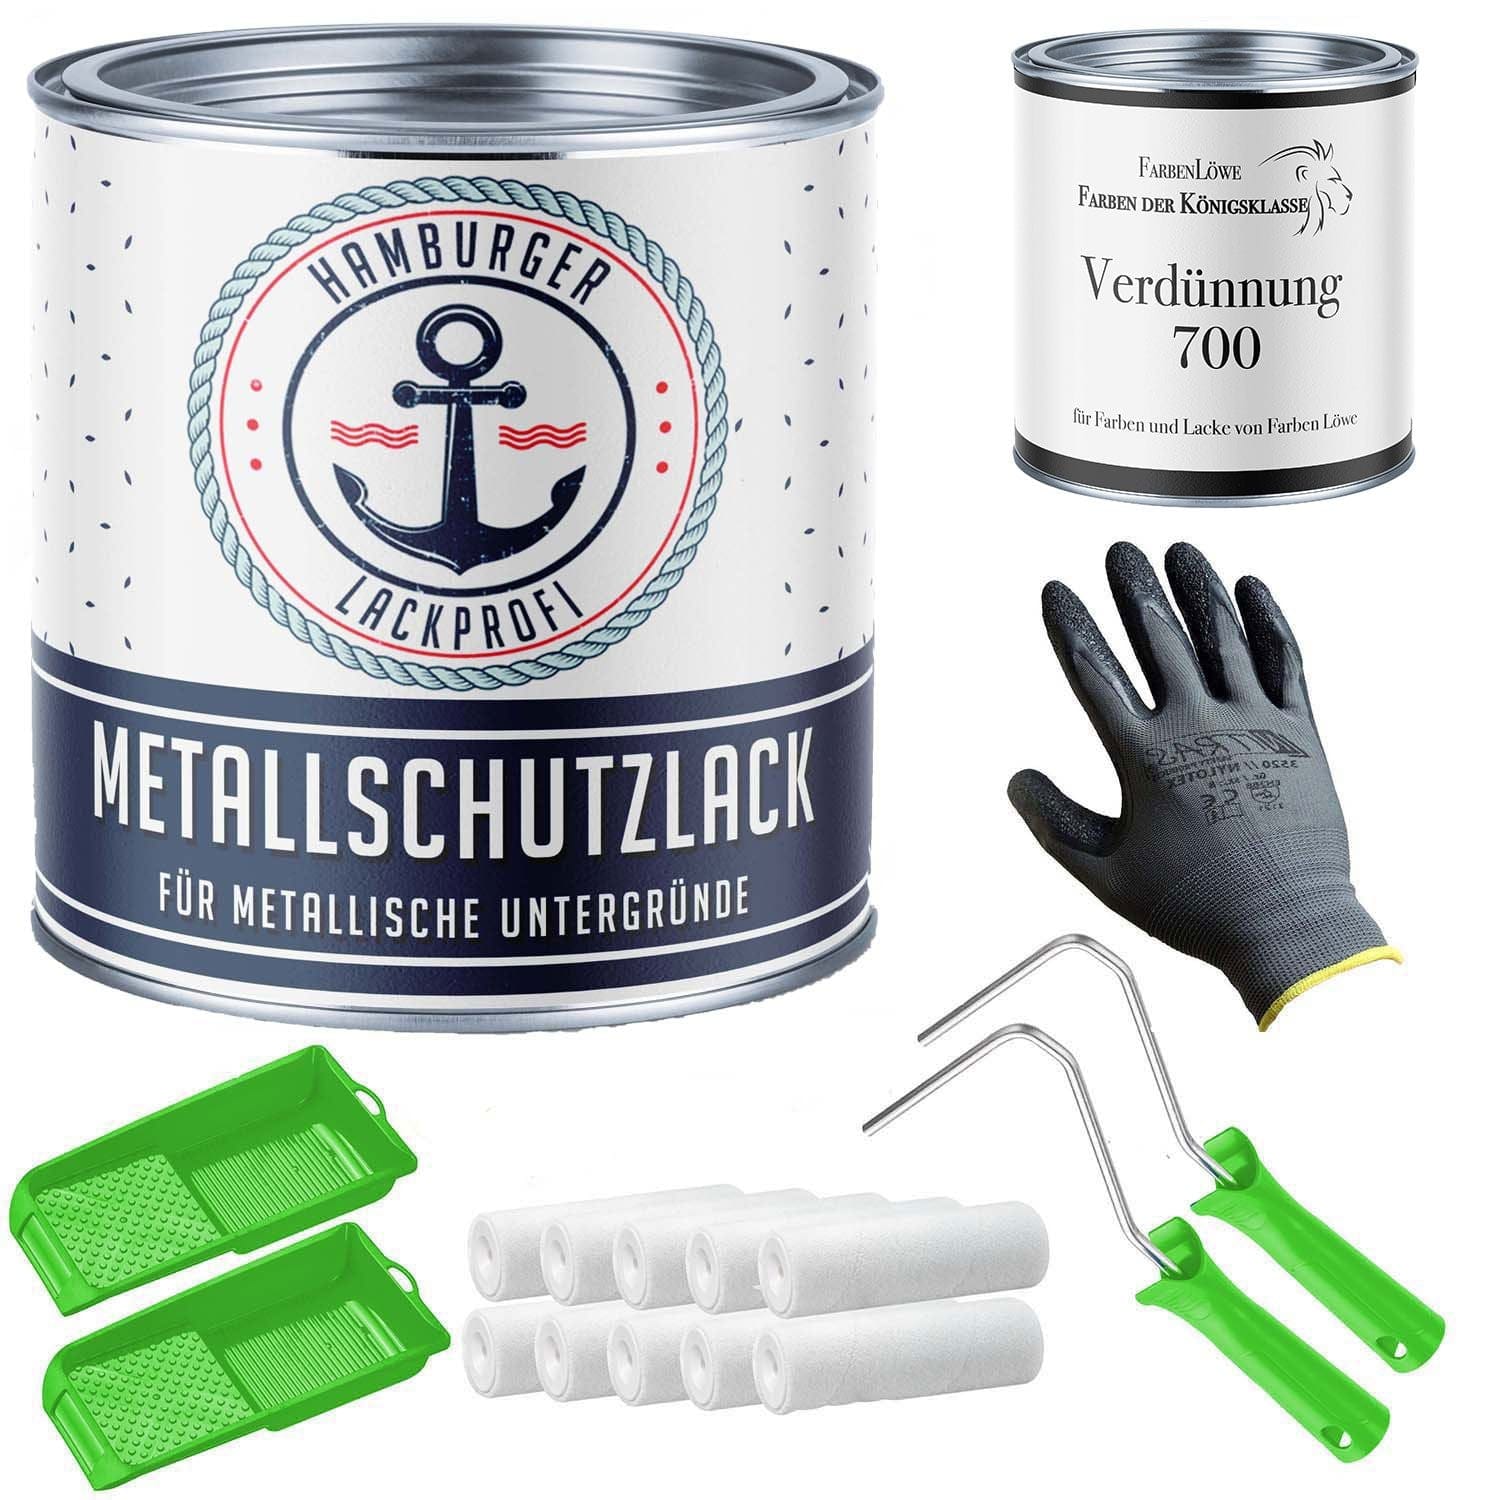 FARBENLÖWE Lacke & Beschichtungen Hamburger Lack-Profi Metallschutzlack in Azurblau RAL 5009 mit Lackierset (X300) & Verdünnung (1 L) - 30% Sparangebot